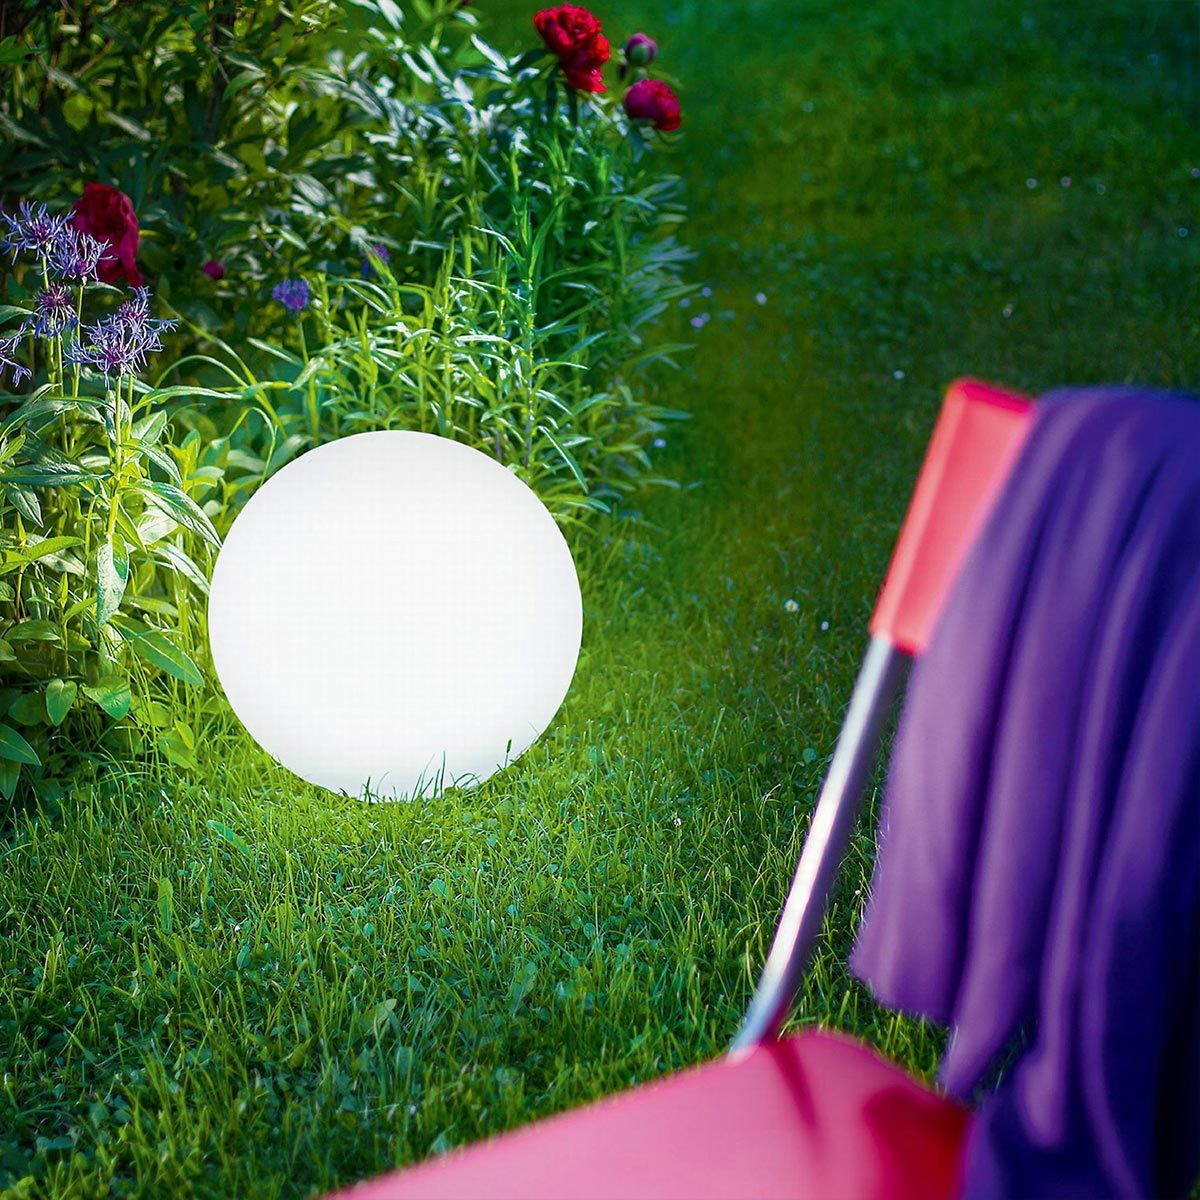 Lampe extérieur led solaire boule blanche à piquer